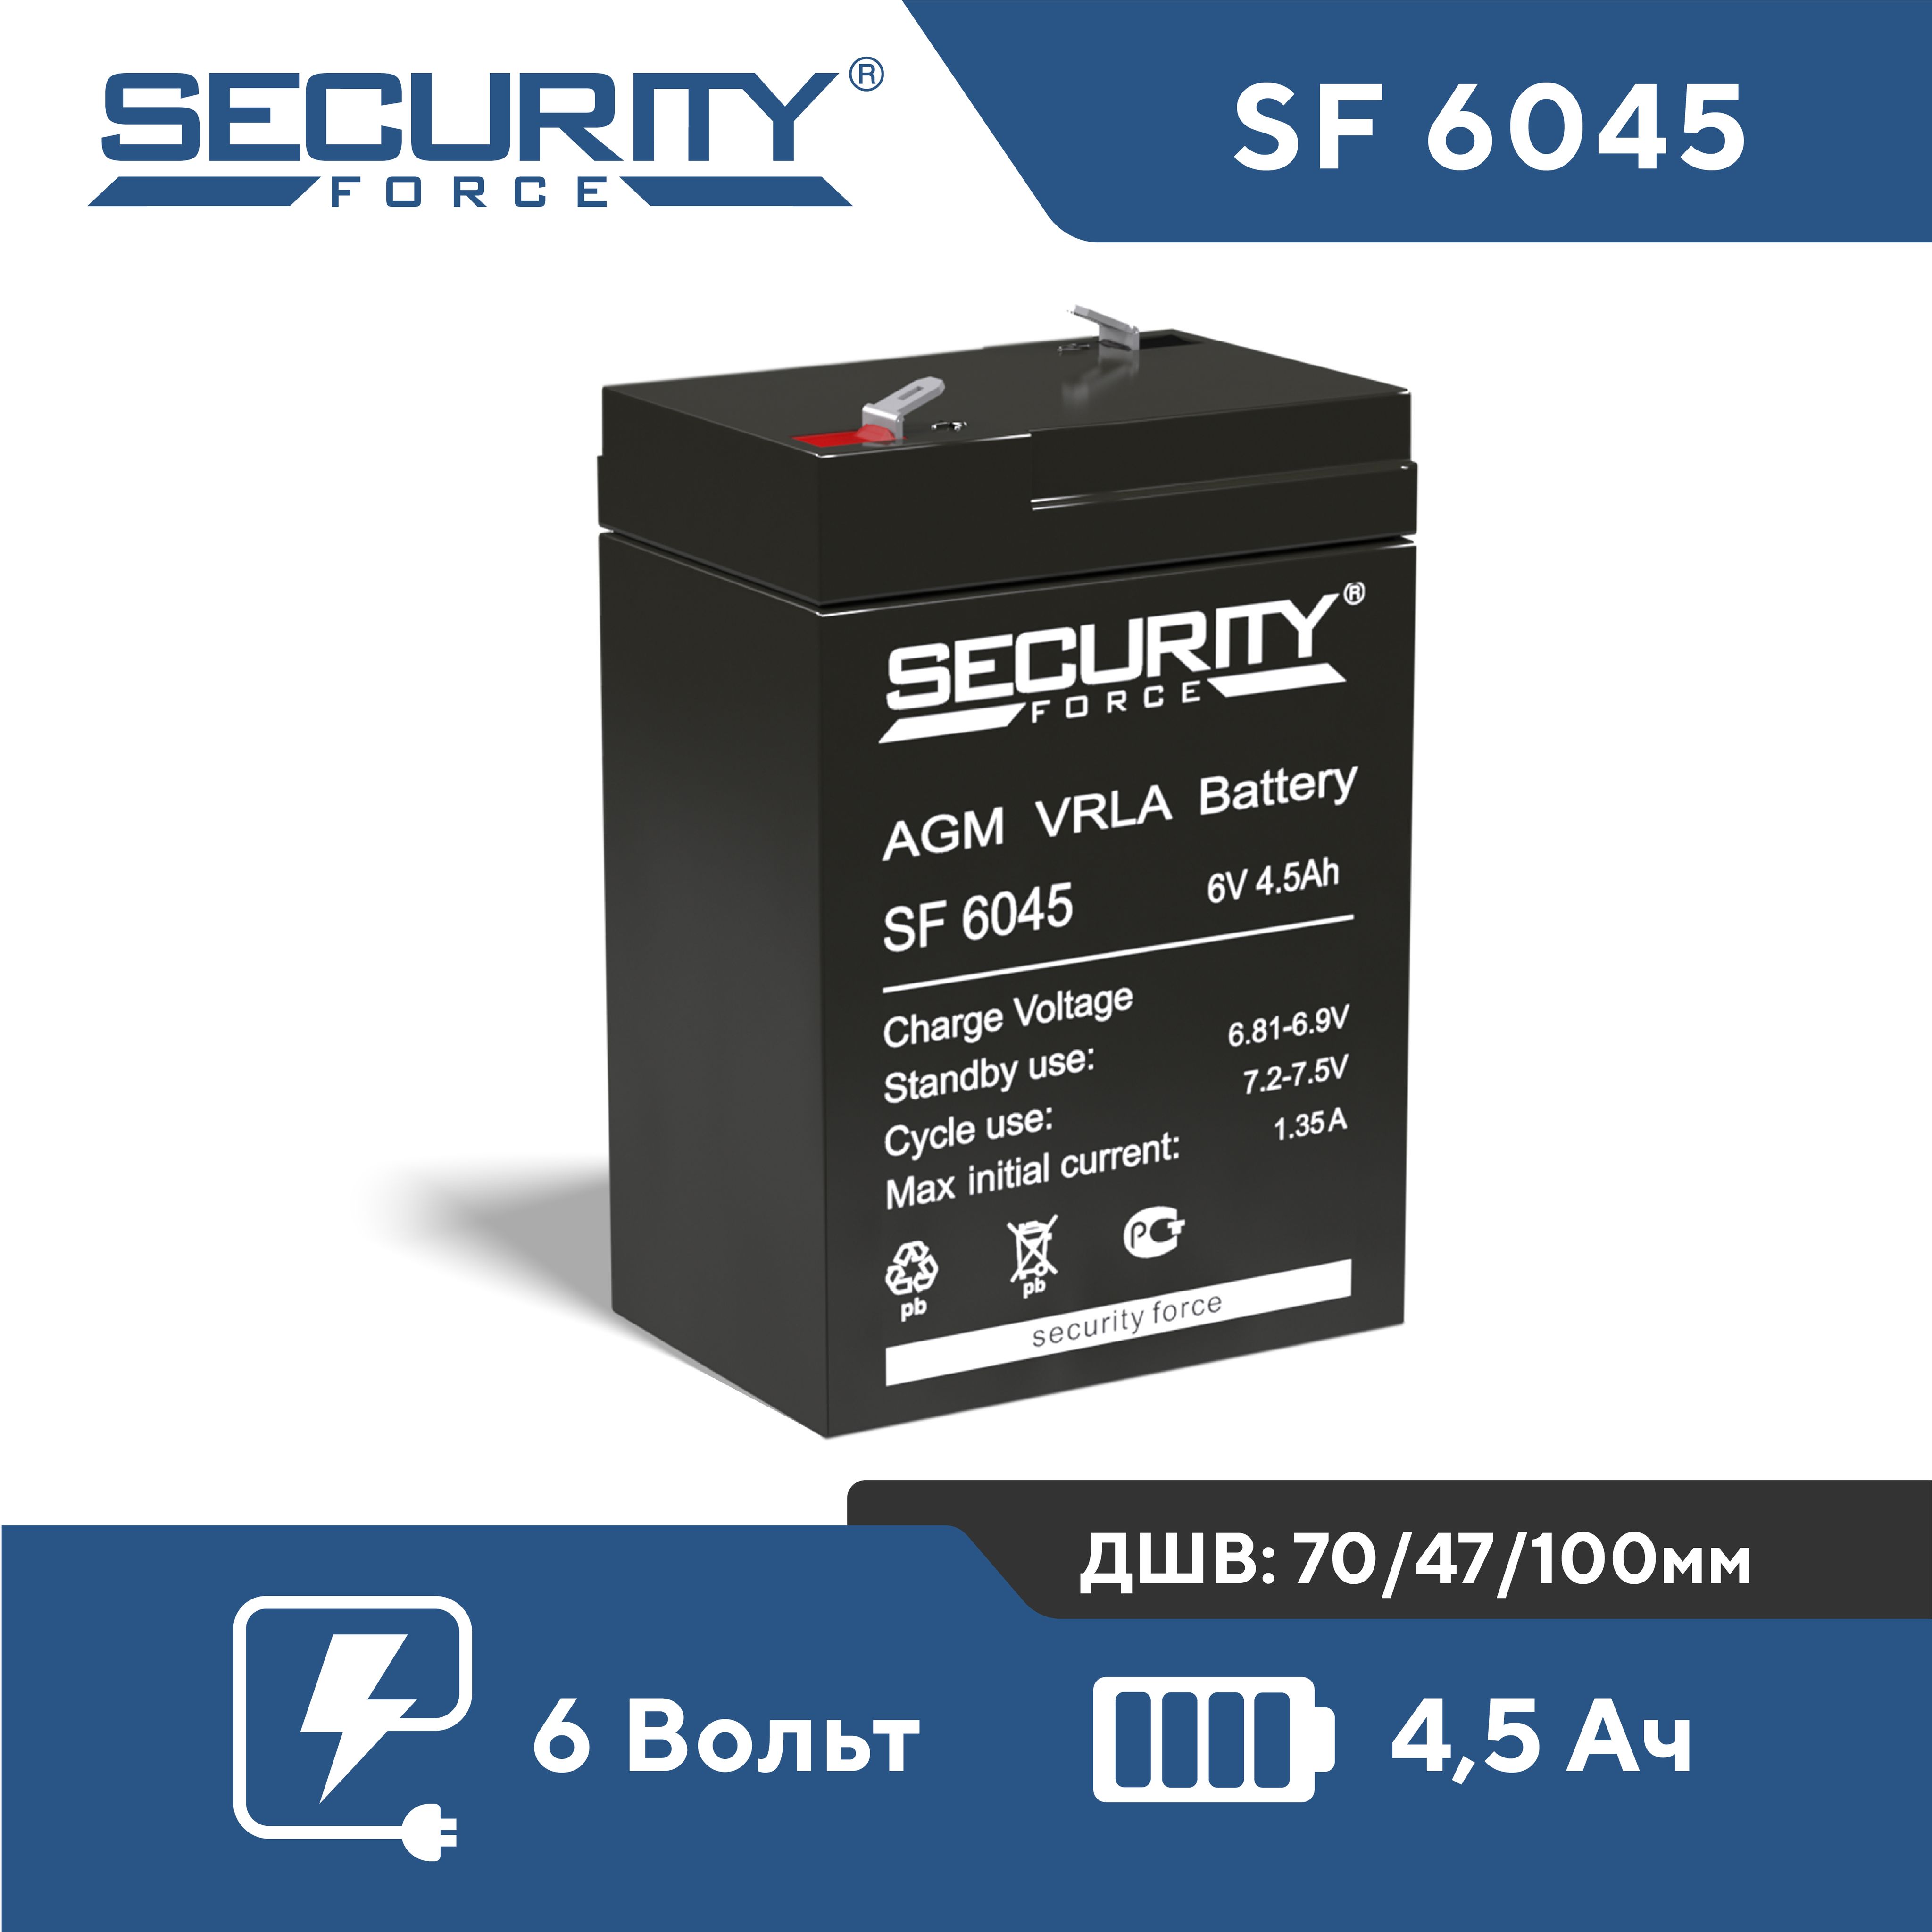 АккумуляторнаябатареяSecurityForceSF6045(6V4,5Ah)AGMVRLA